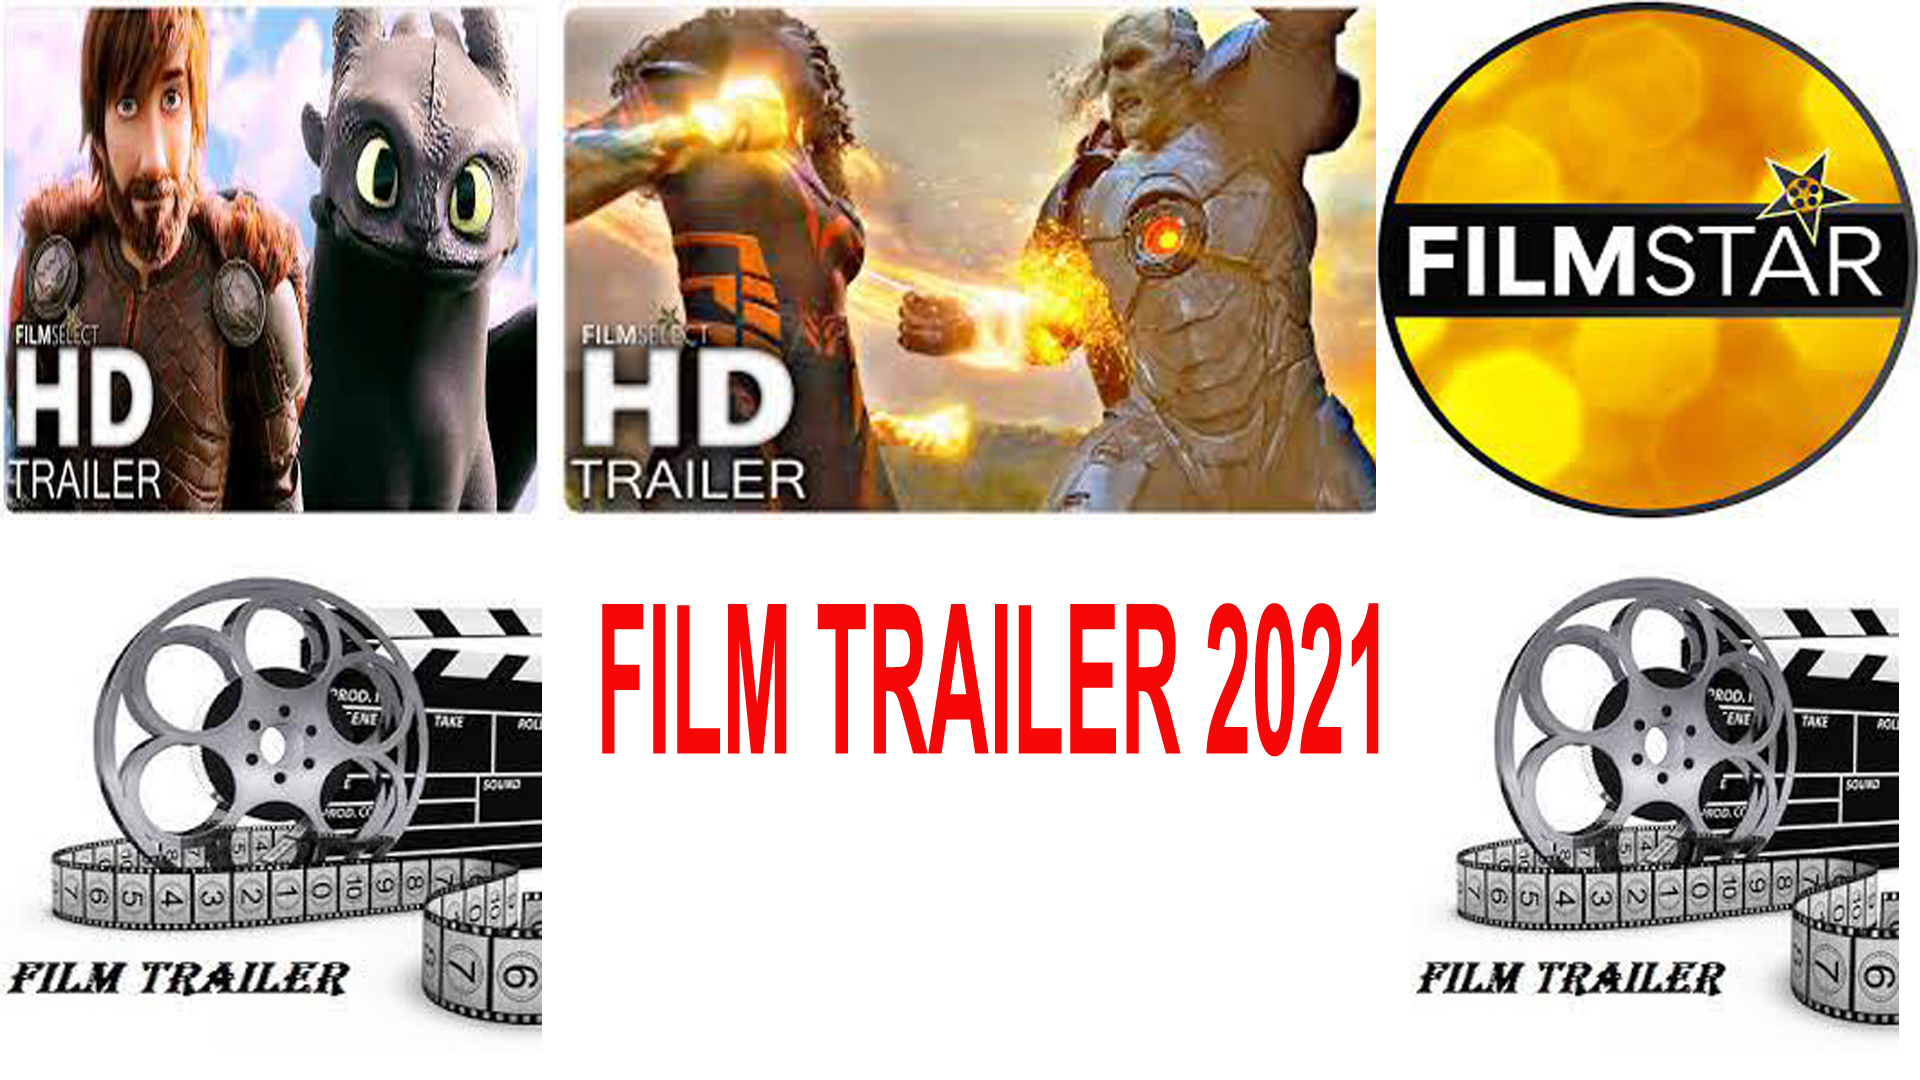 Film Trailer 2021